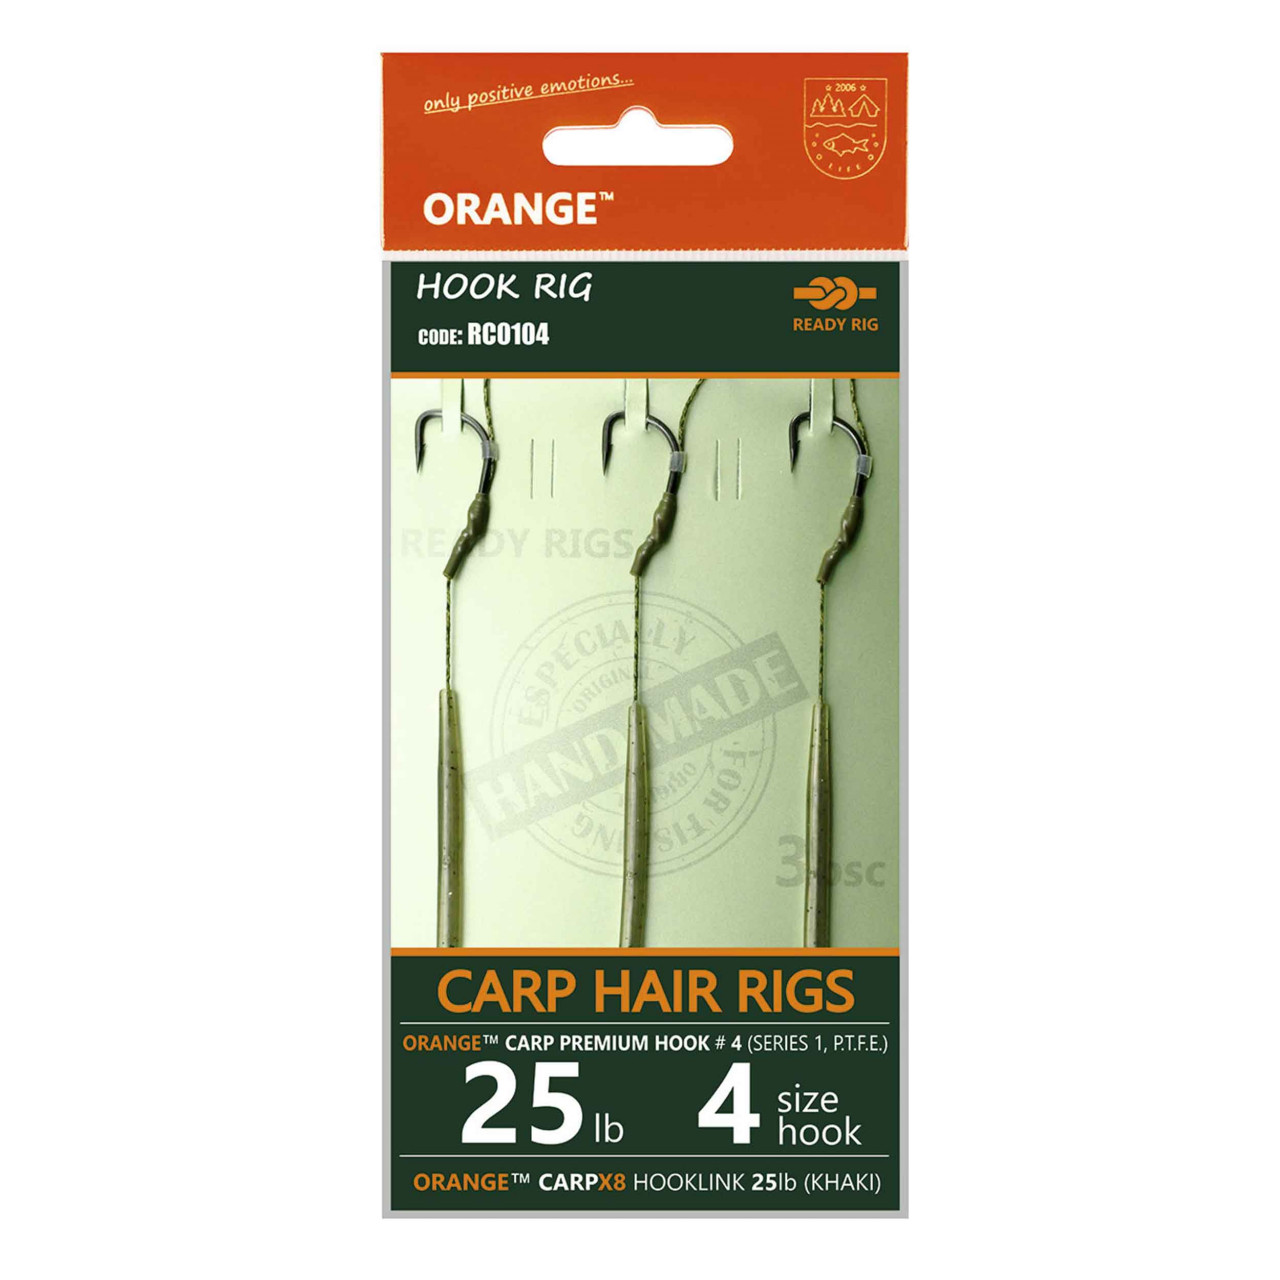 Rig Crap MMT Orange Series 1 No.8 15Lb Crap Hair Rigs